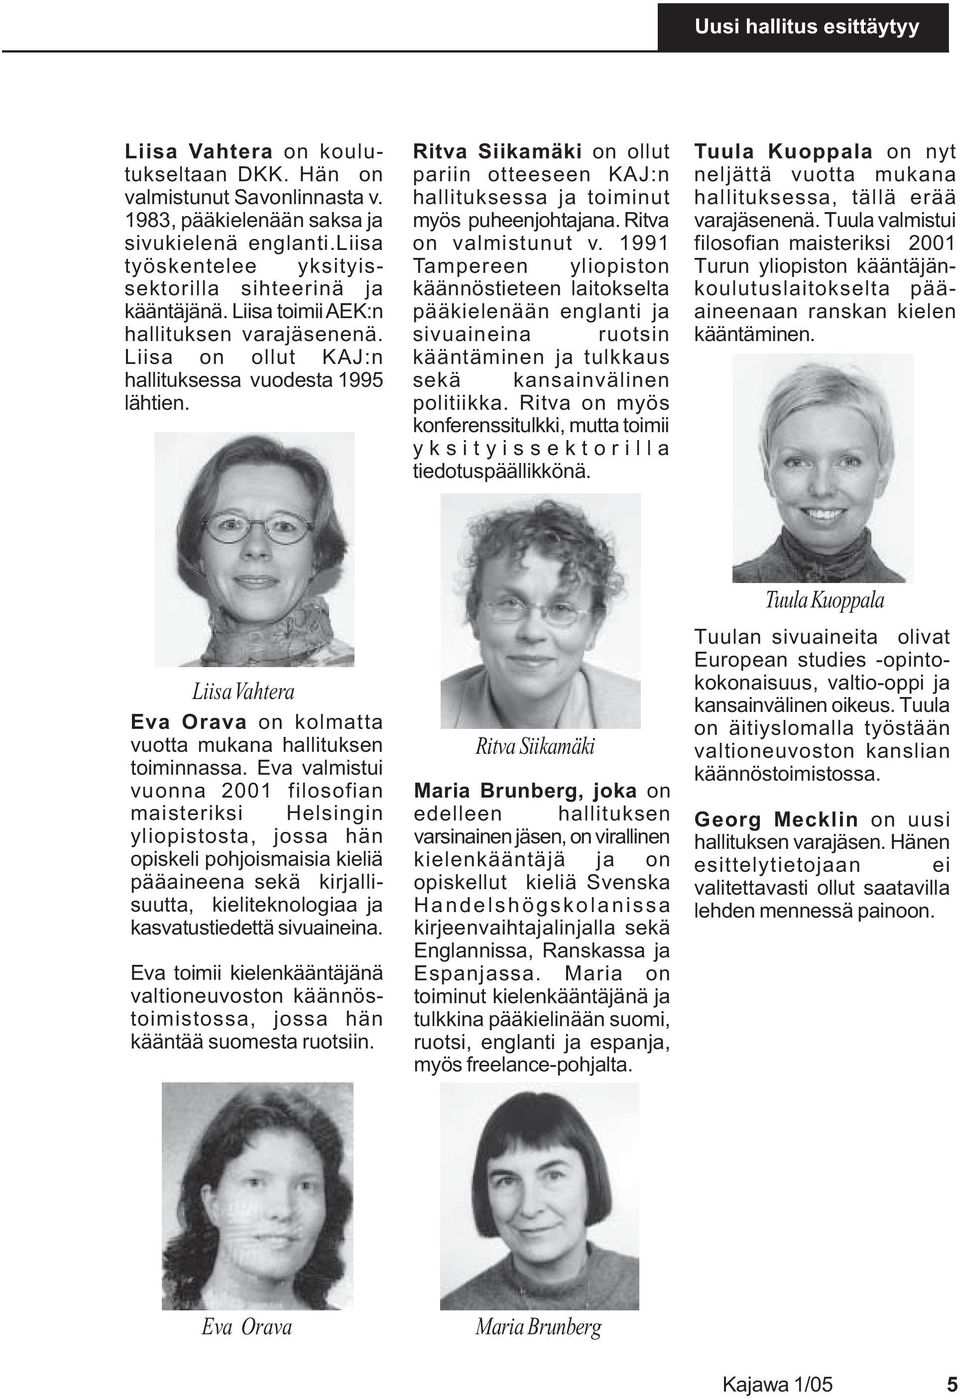 Ritva Siikamäki on ollut pariin otteeseen KAJ:n hallituksessa ja toiminut myös puheenjohtajana. Ritva on valmistunut v.